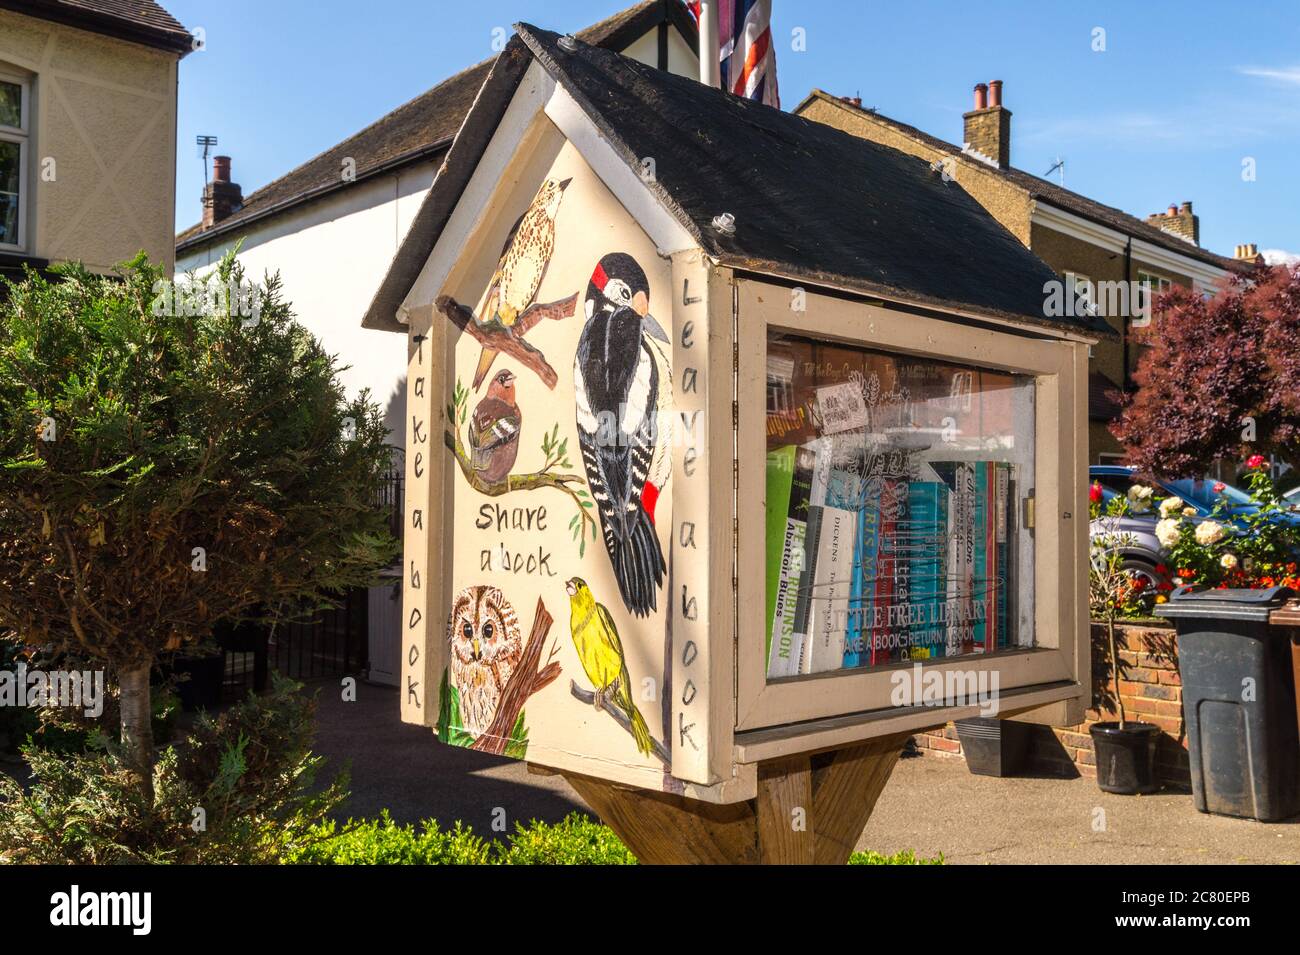 Bücherwechselkiosk mit 'kleiner freier Bibliothek' in einem Wohngarten, Chingford, East London, England Stockfoto